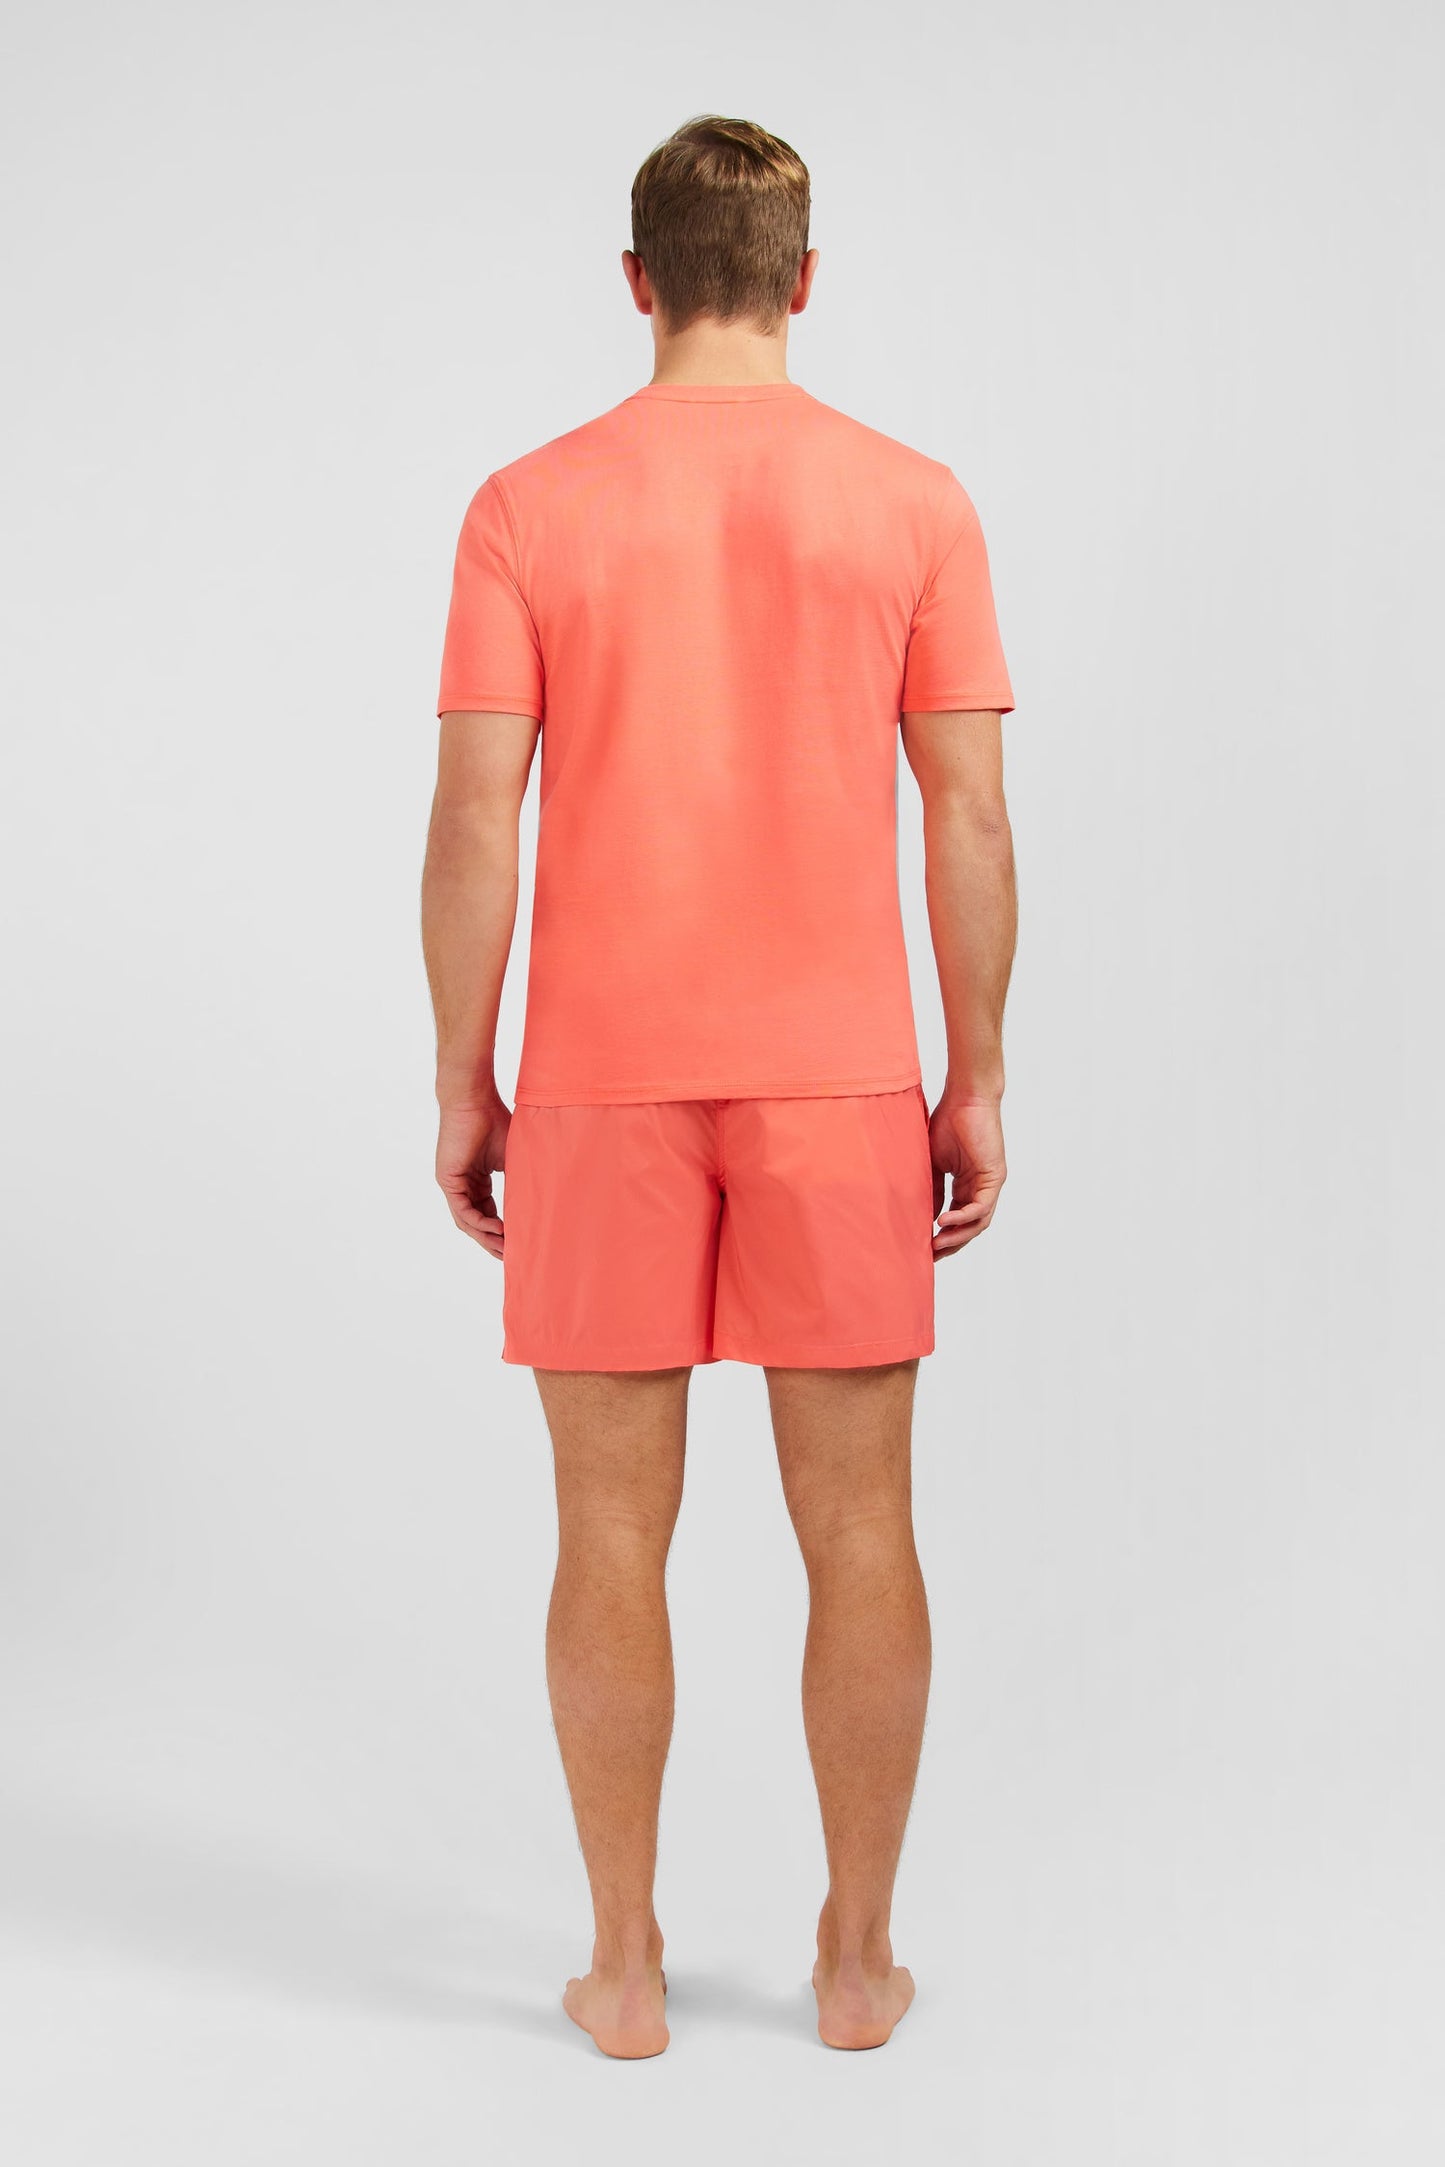 T-shirt rose saumon à manches courtes - Image 6